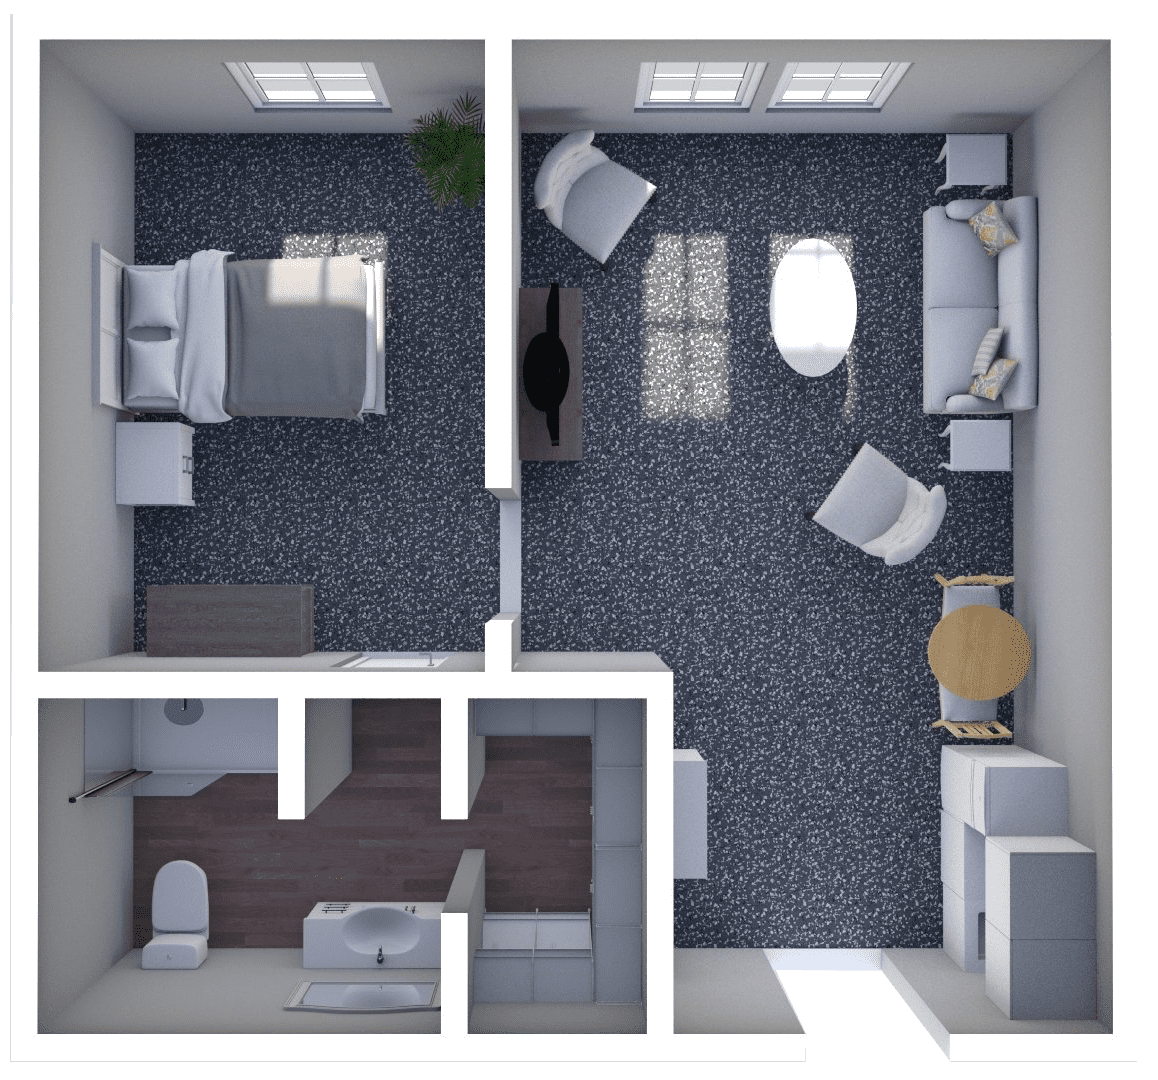 3D Floor Plans for Senior Living